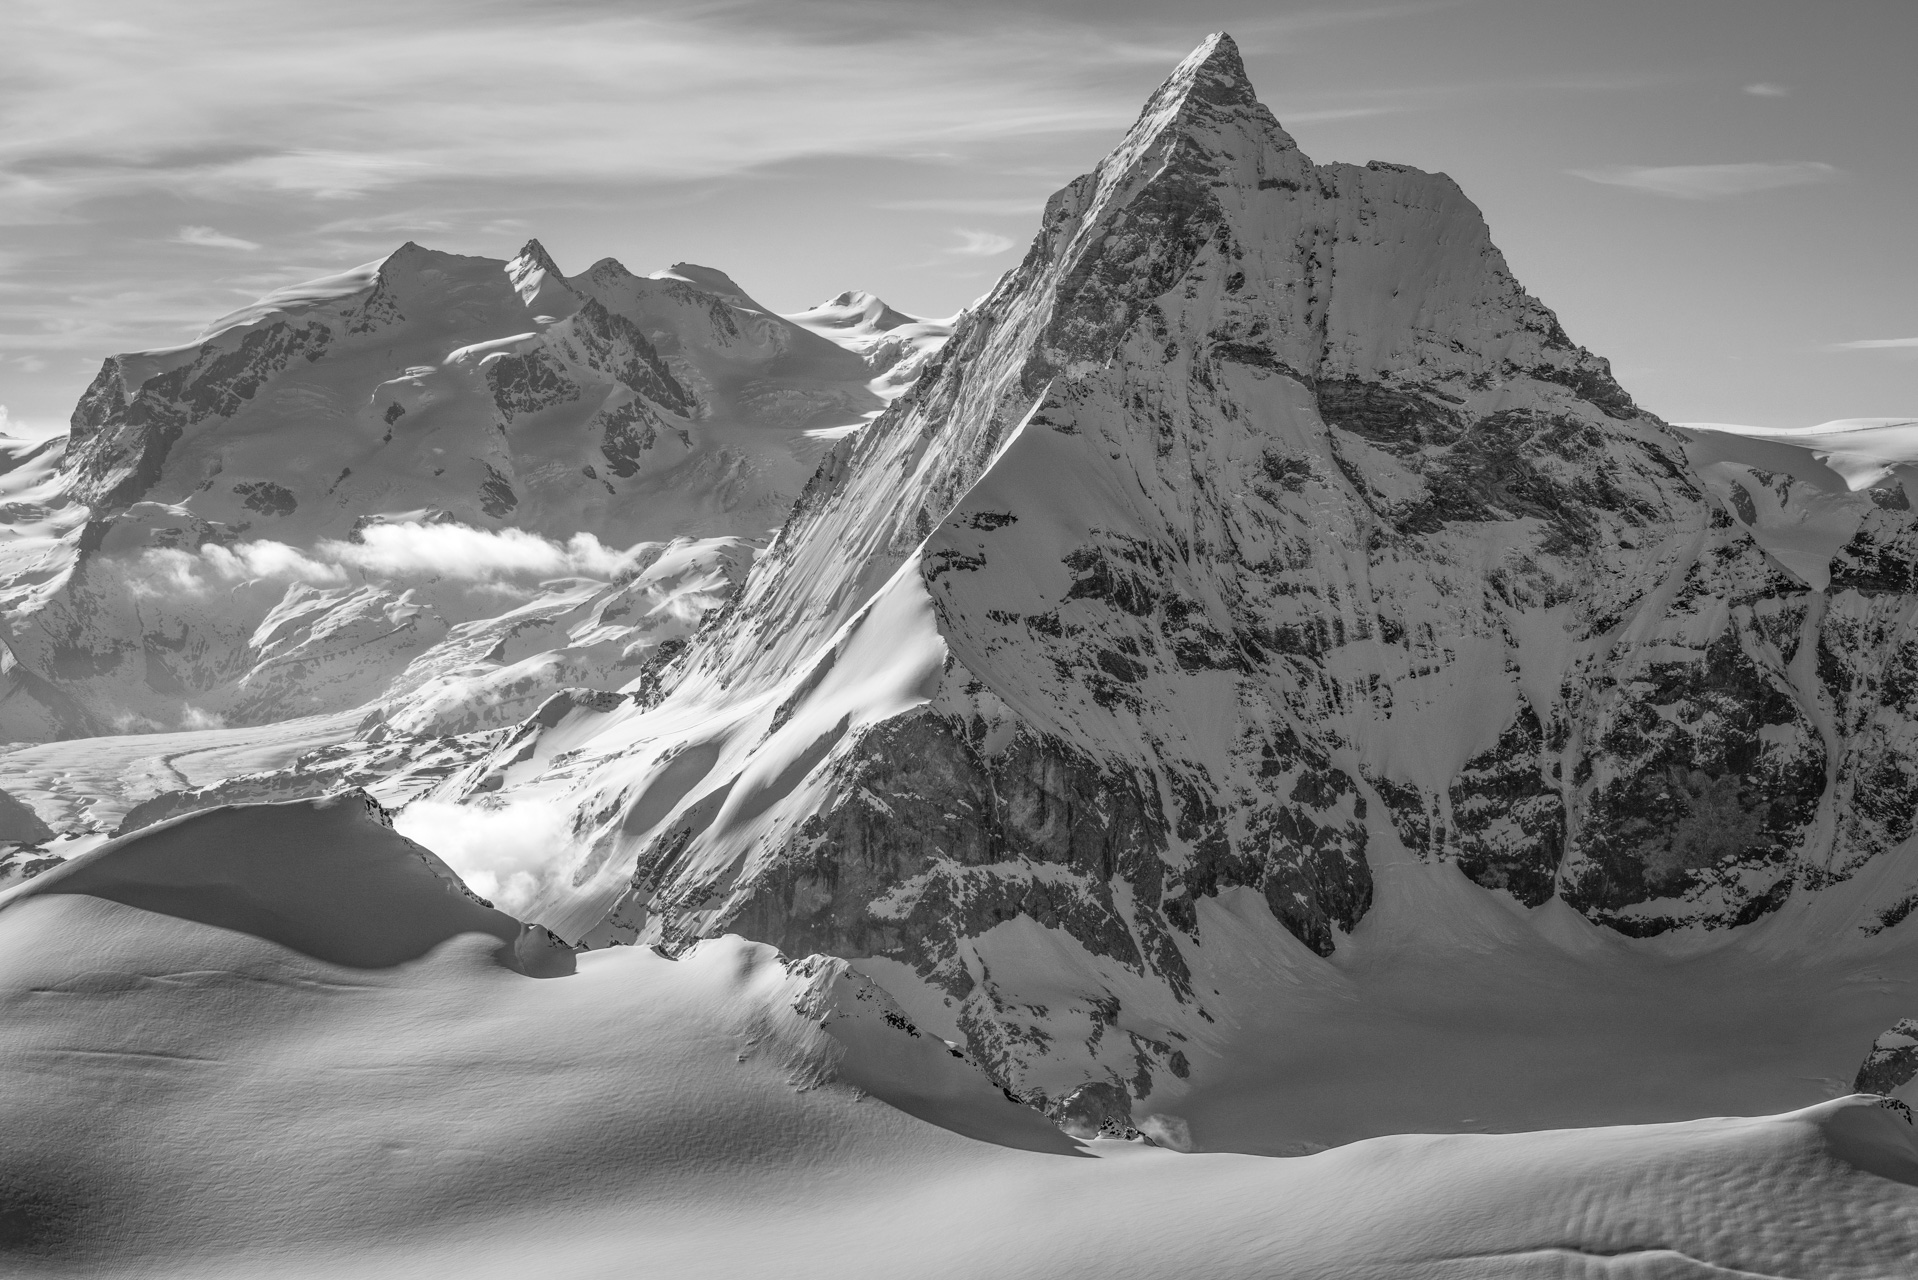 Monte Rosa - Matterhorn - Massif du Mont Rose et photo noir et blanc du Mont Cervin sous les rayons de soleil - Pointe Dufour sommet de Suisse.